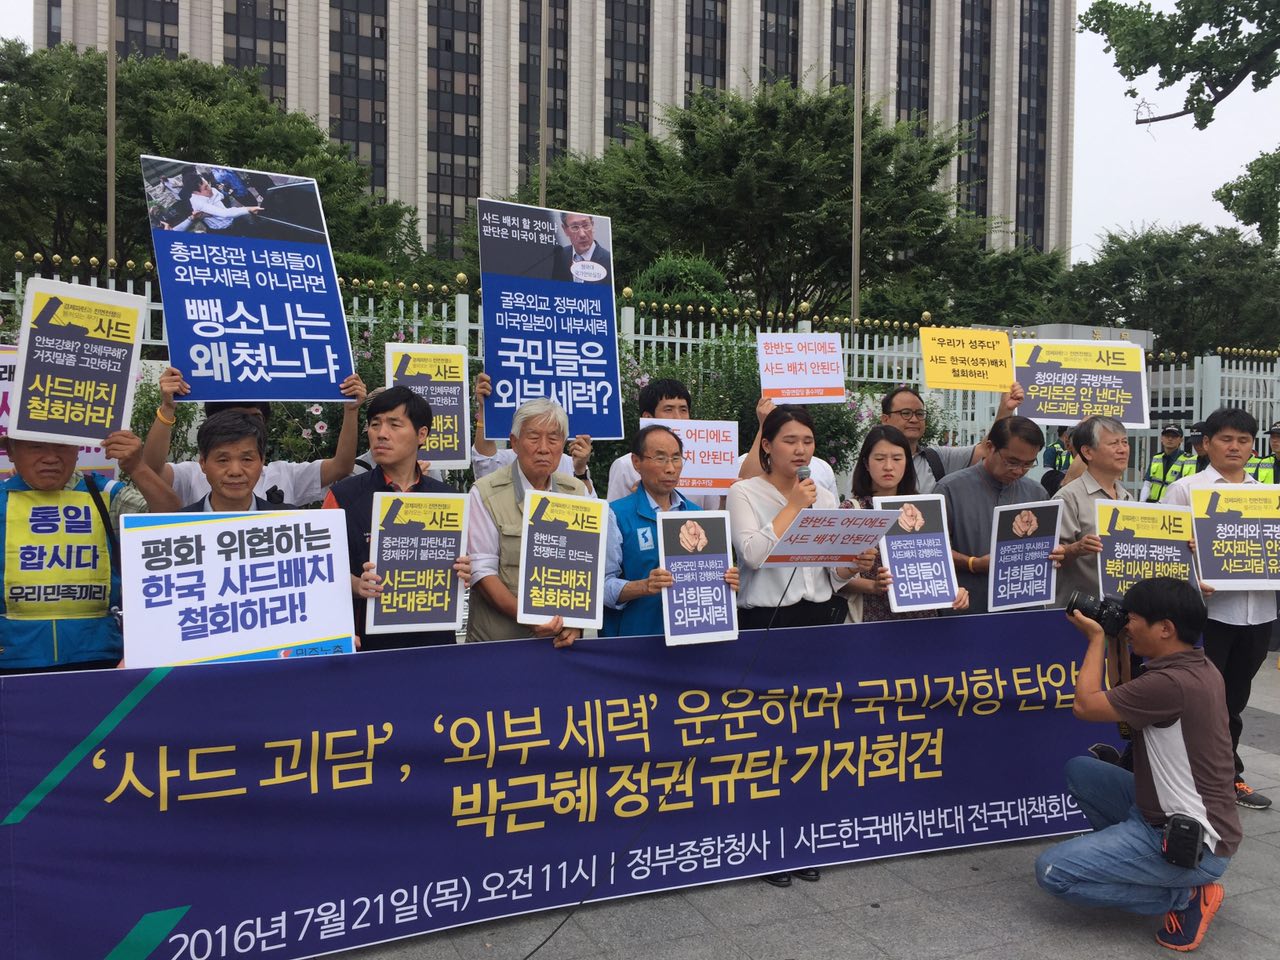 성주군 집회에 외부세력이 개입했다는 허위 사실로 국민저항을 탄압하는 박근혜 정부에 항의하는 기자회견이 열렸다.  심지어 현장에 없었던 인사들의 실명이 언론에 보도되기도 하였다.